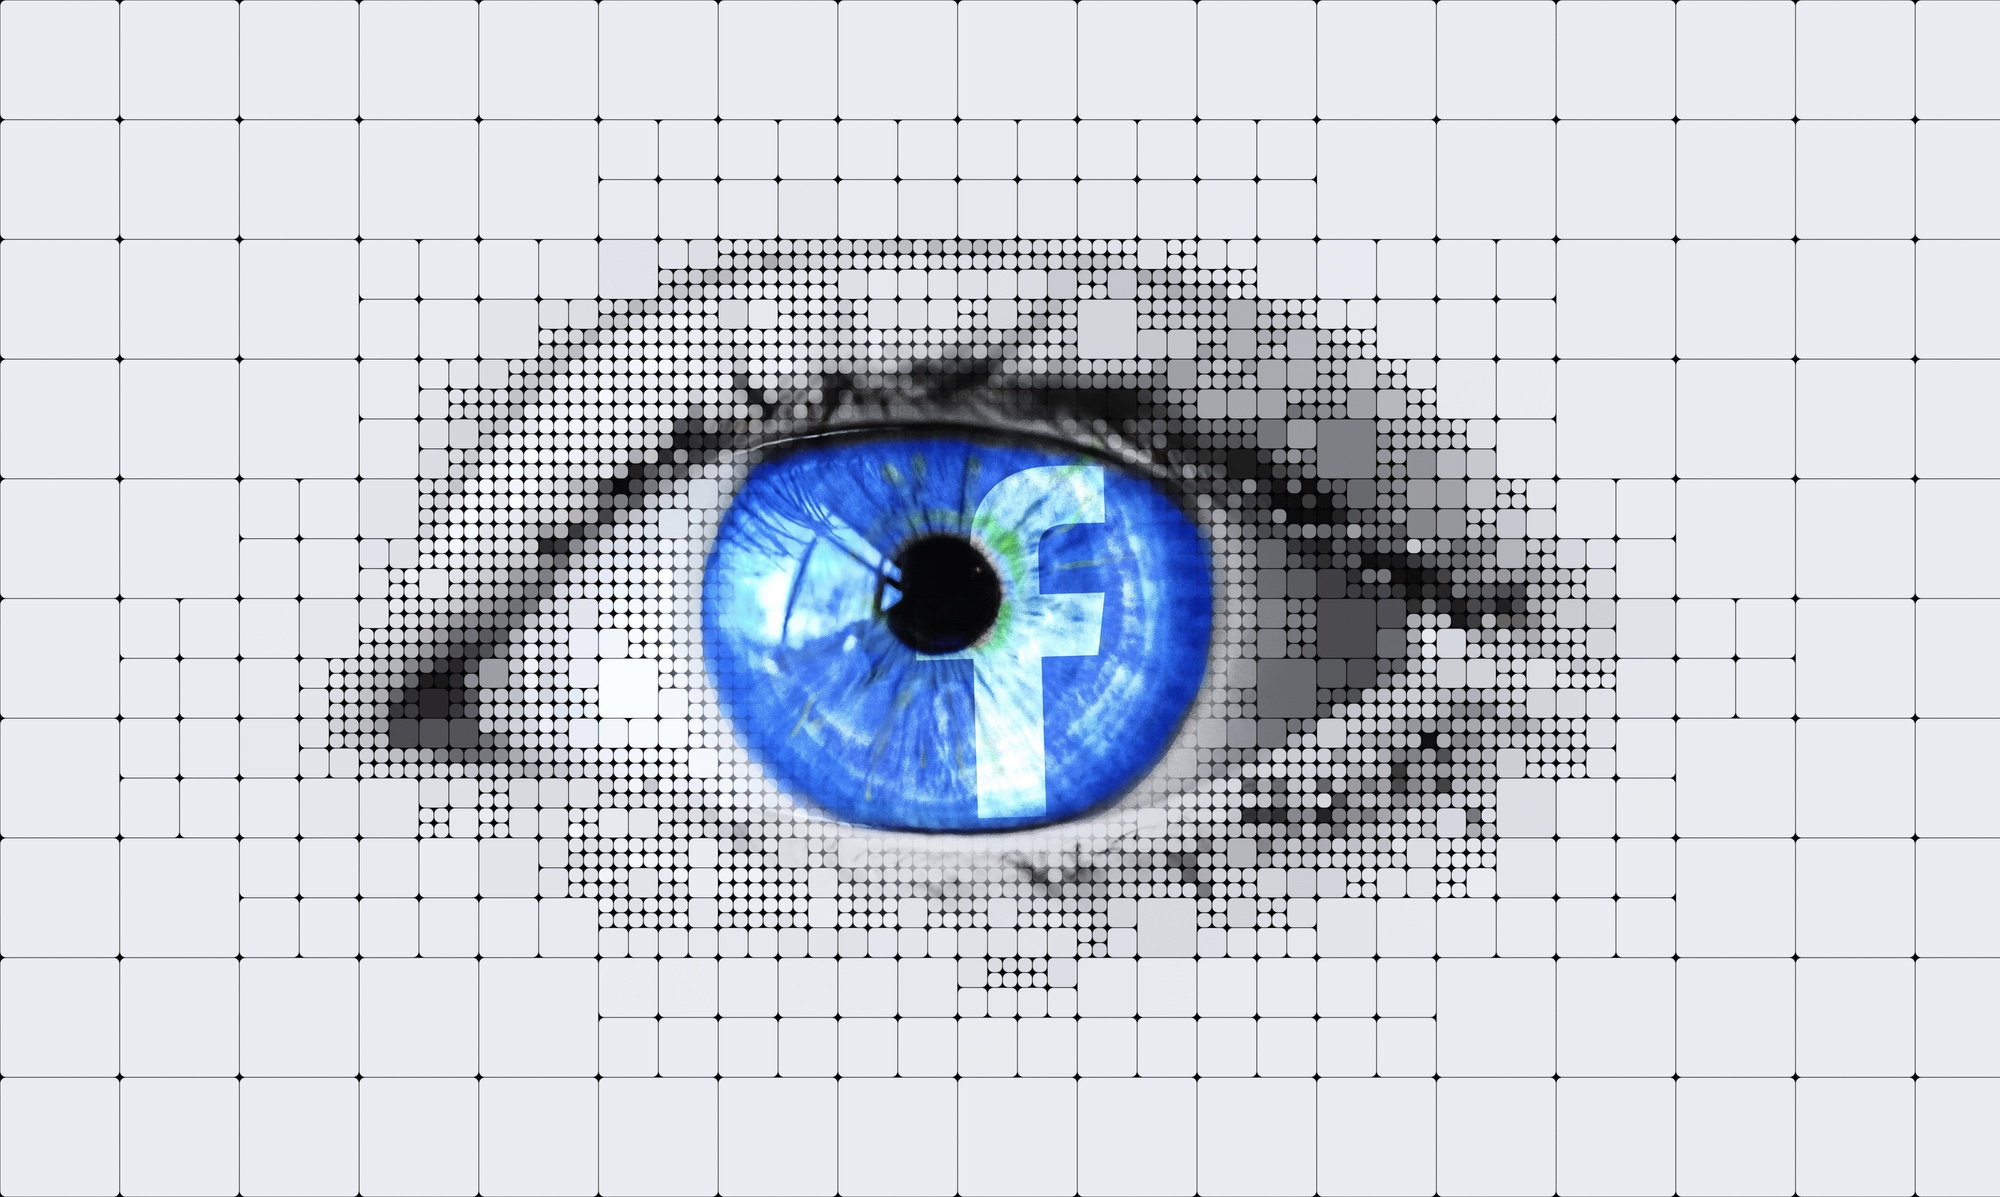 Bild: Auge mit Facebook-Logo als Iris